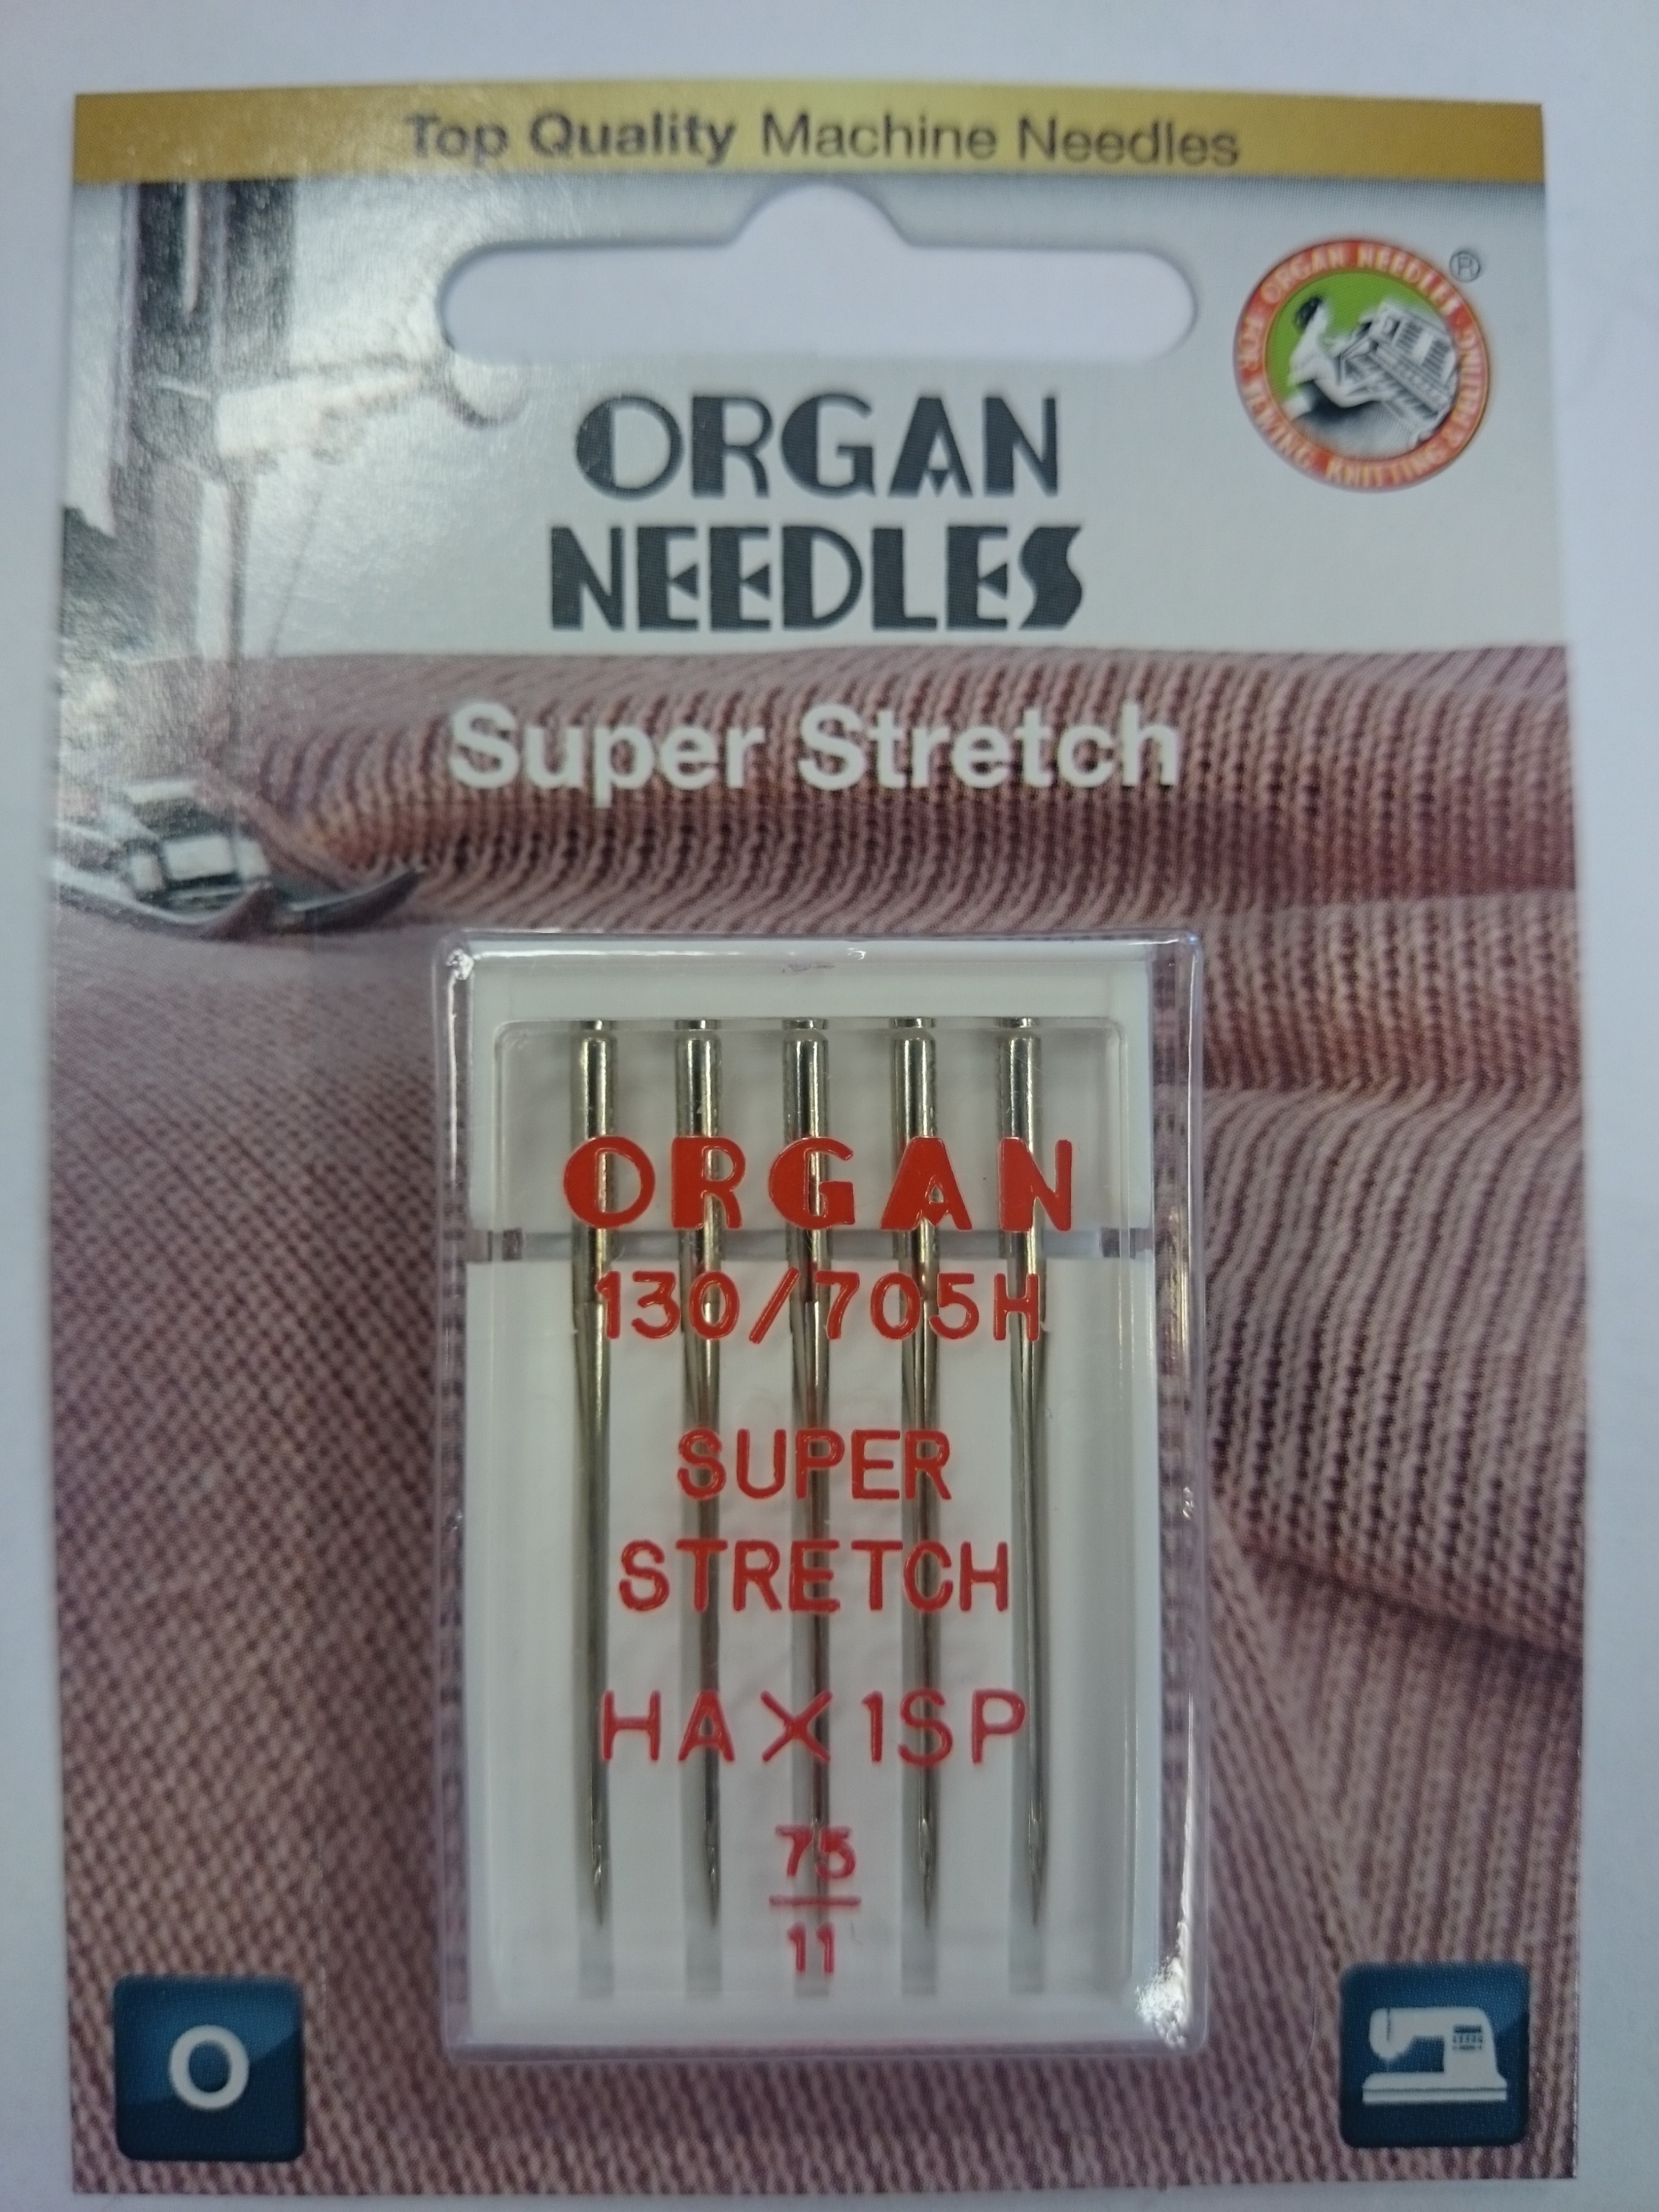 Organ symaskinnål - 5 st., SuperStretch overlock Hax1SP 75/11 ...